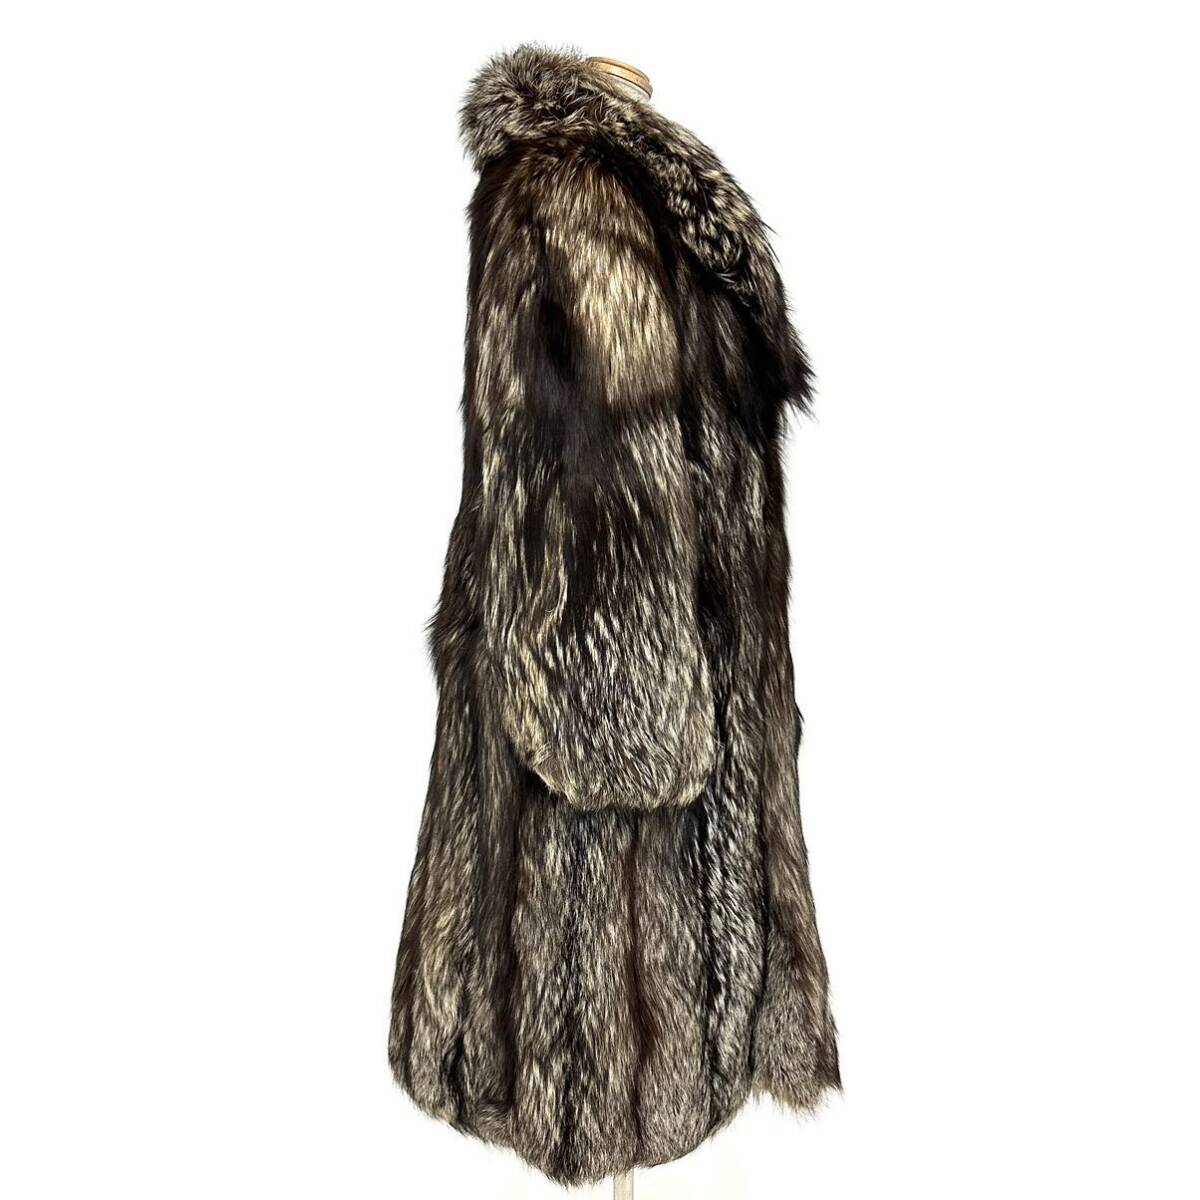 [. quotient ] h2851 SAGA FOX серебристая лиса мужской MENS полупальто лиса пальто длинное пальто . кожа FOX fox длина примерно 110cm